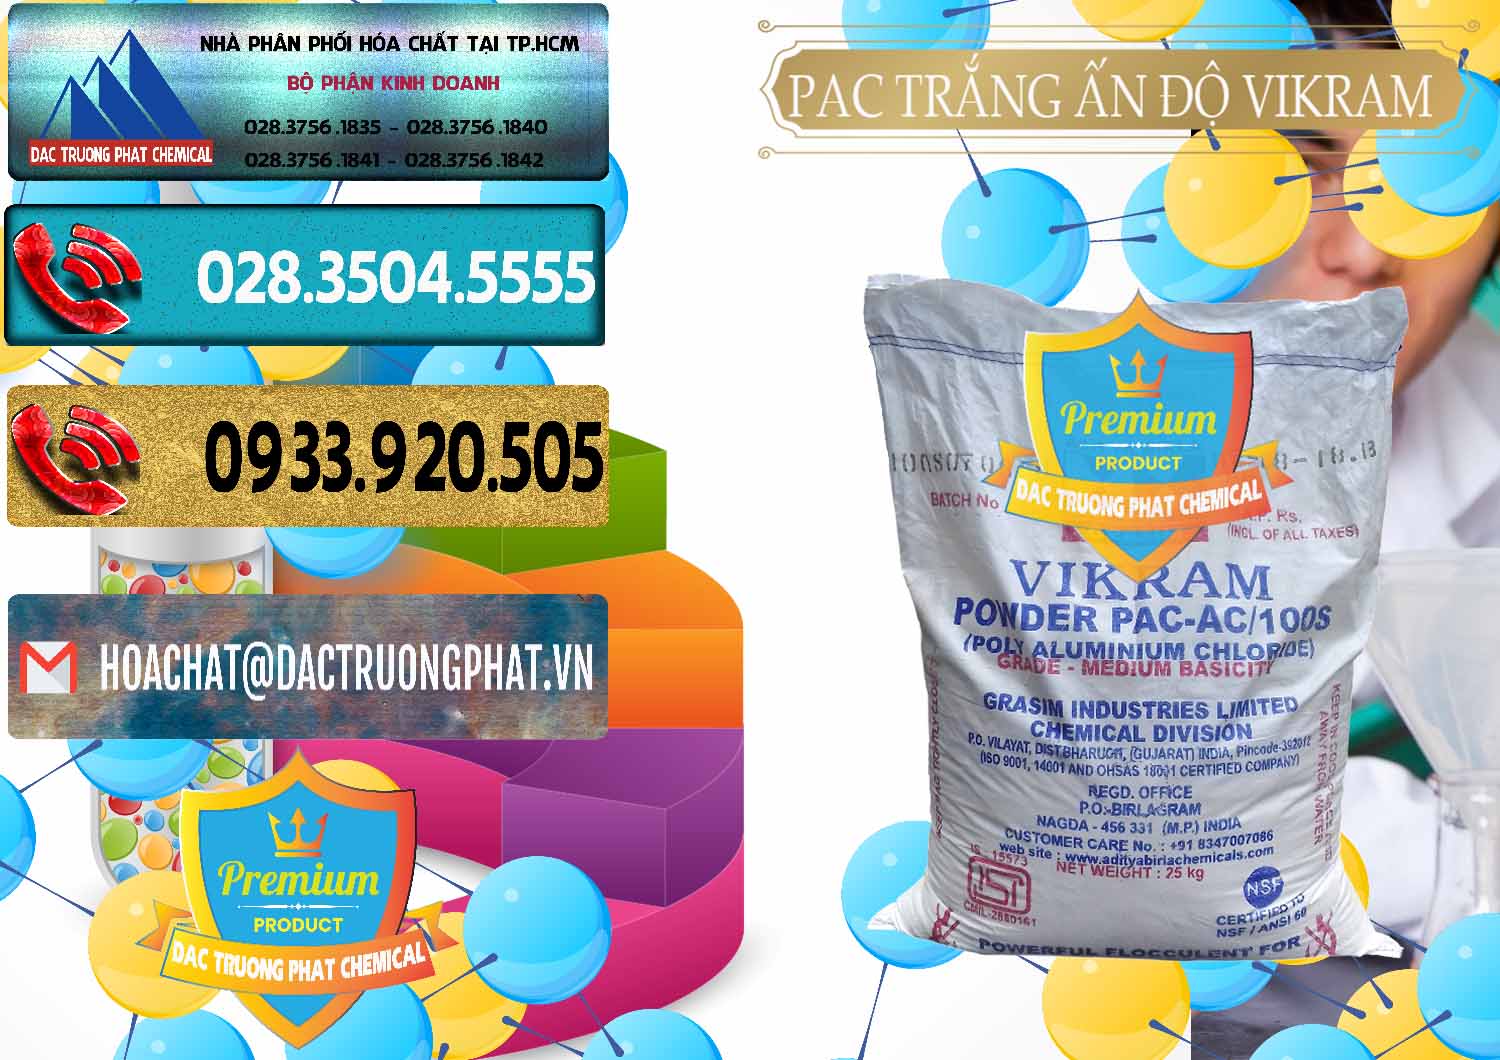 Đơn vị chuyên kinh doanh - bán PAC - Polyaluminium Chloride Ấn Độ India Vikram - 0120 - Cty chuyên phân phối - bán hóa chất tại TP.HCM - hoachatdetnhuom.com